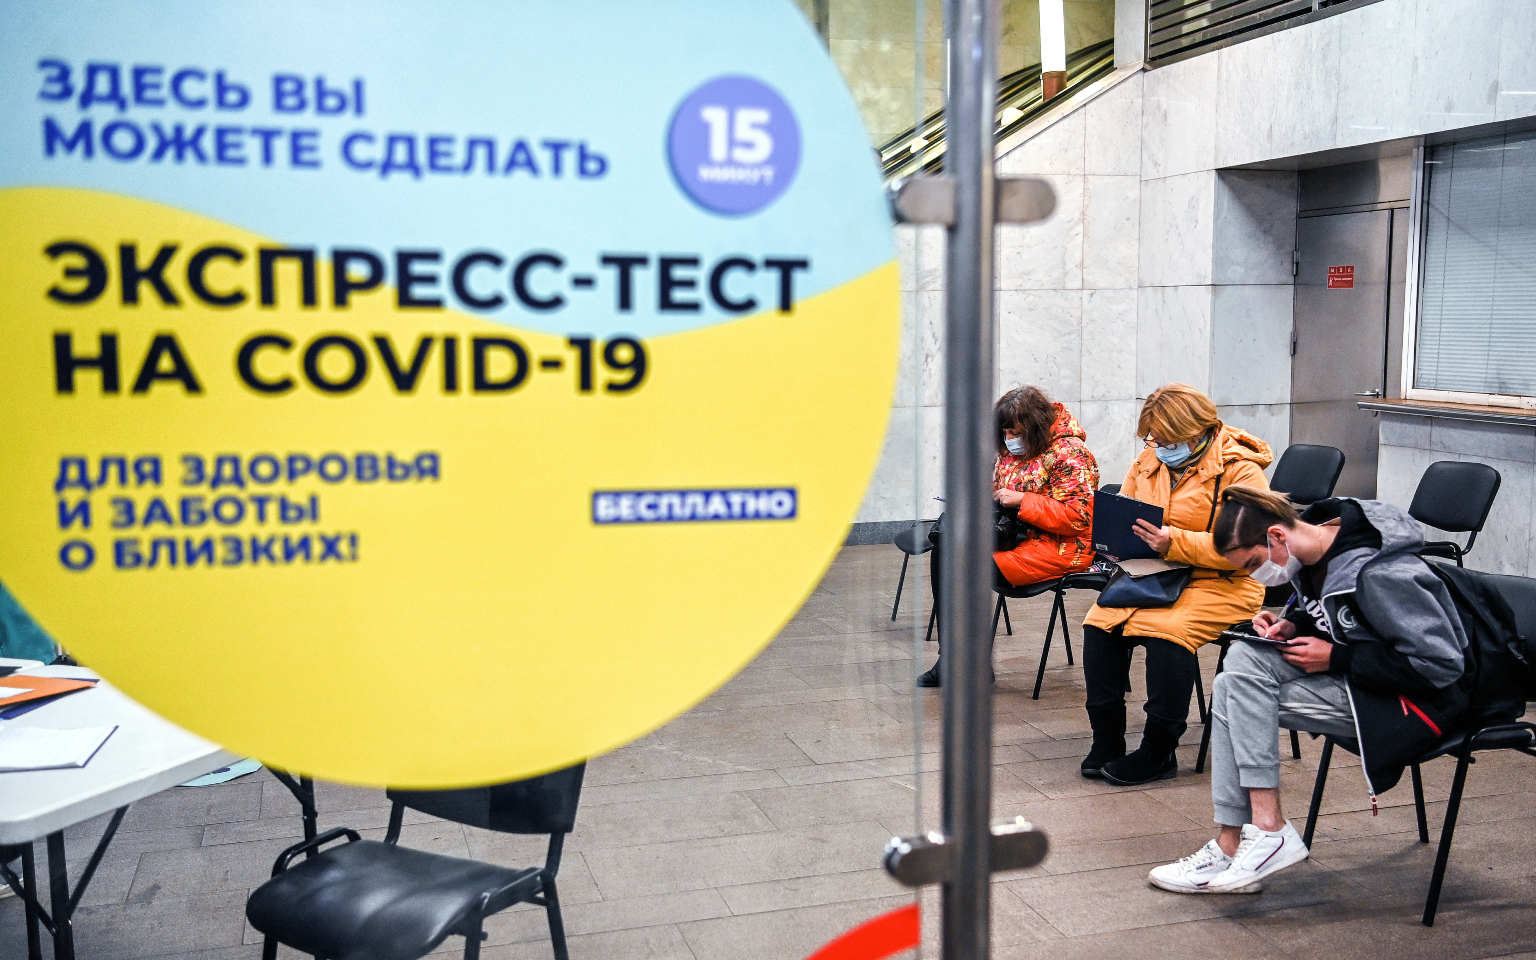 Москвичам посоветовали заполнять онлайн-заявку на экспресс-тест на COVID